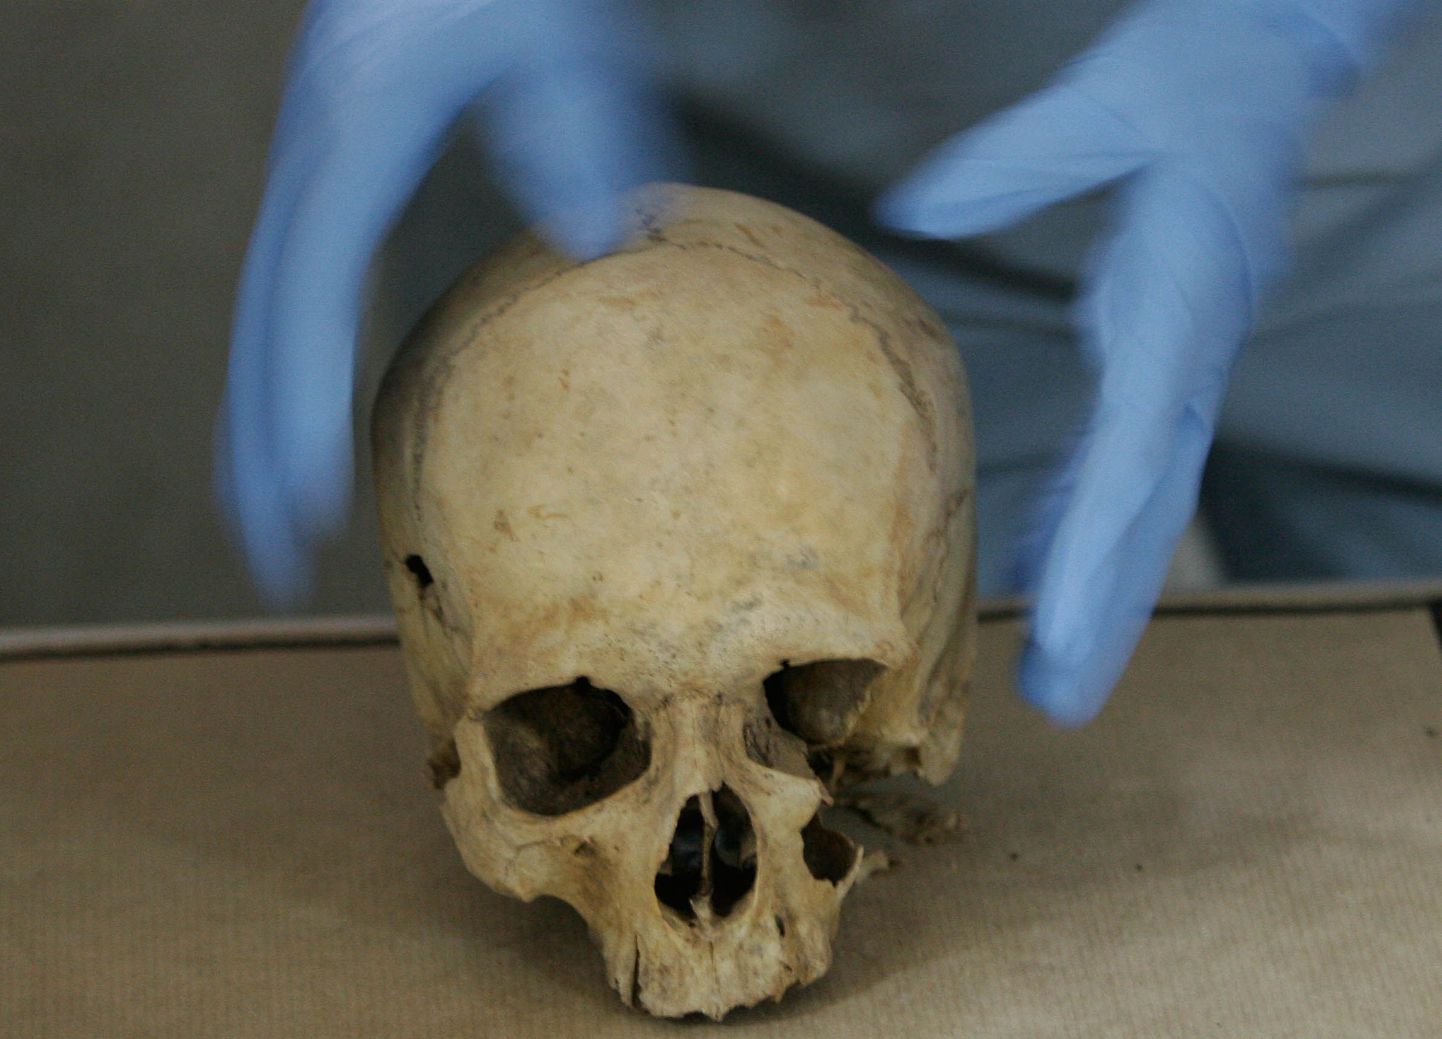 Asiaadi skeleti leidmine näitas, et roomlastel olid laiad kontaktid